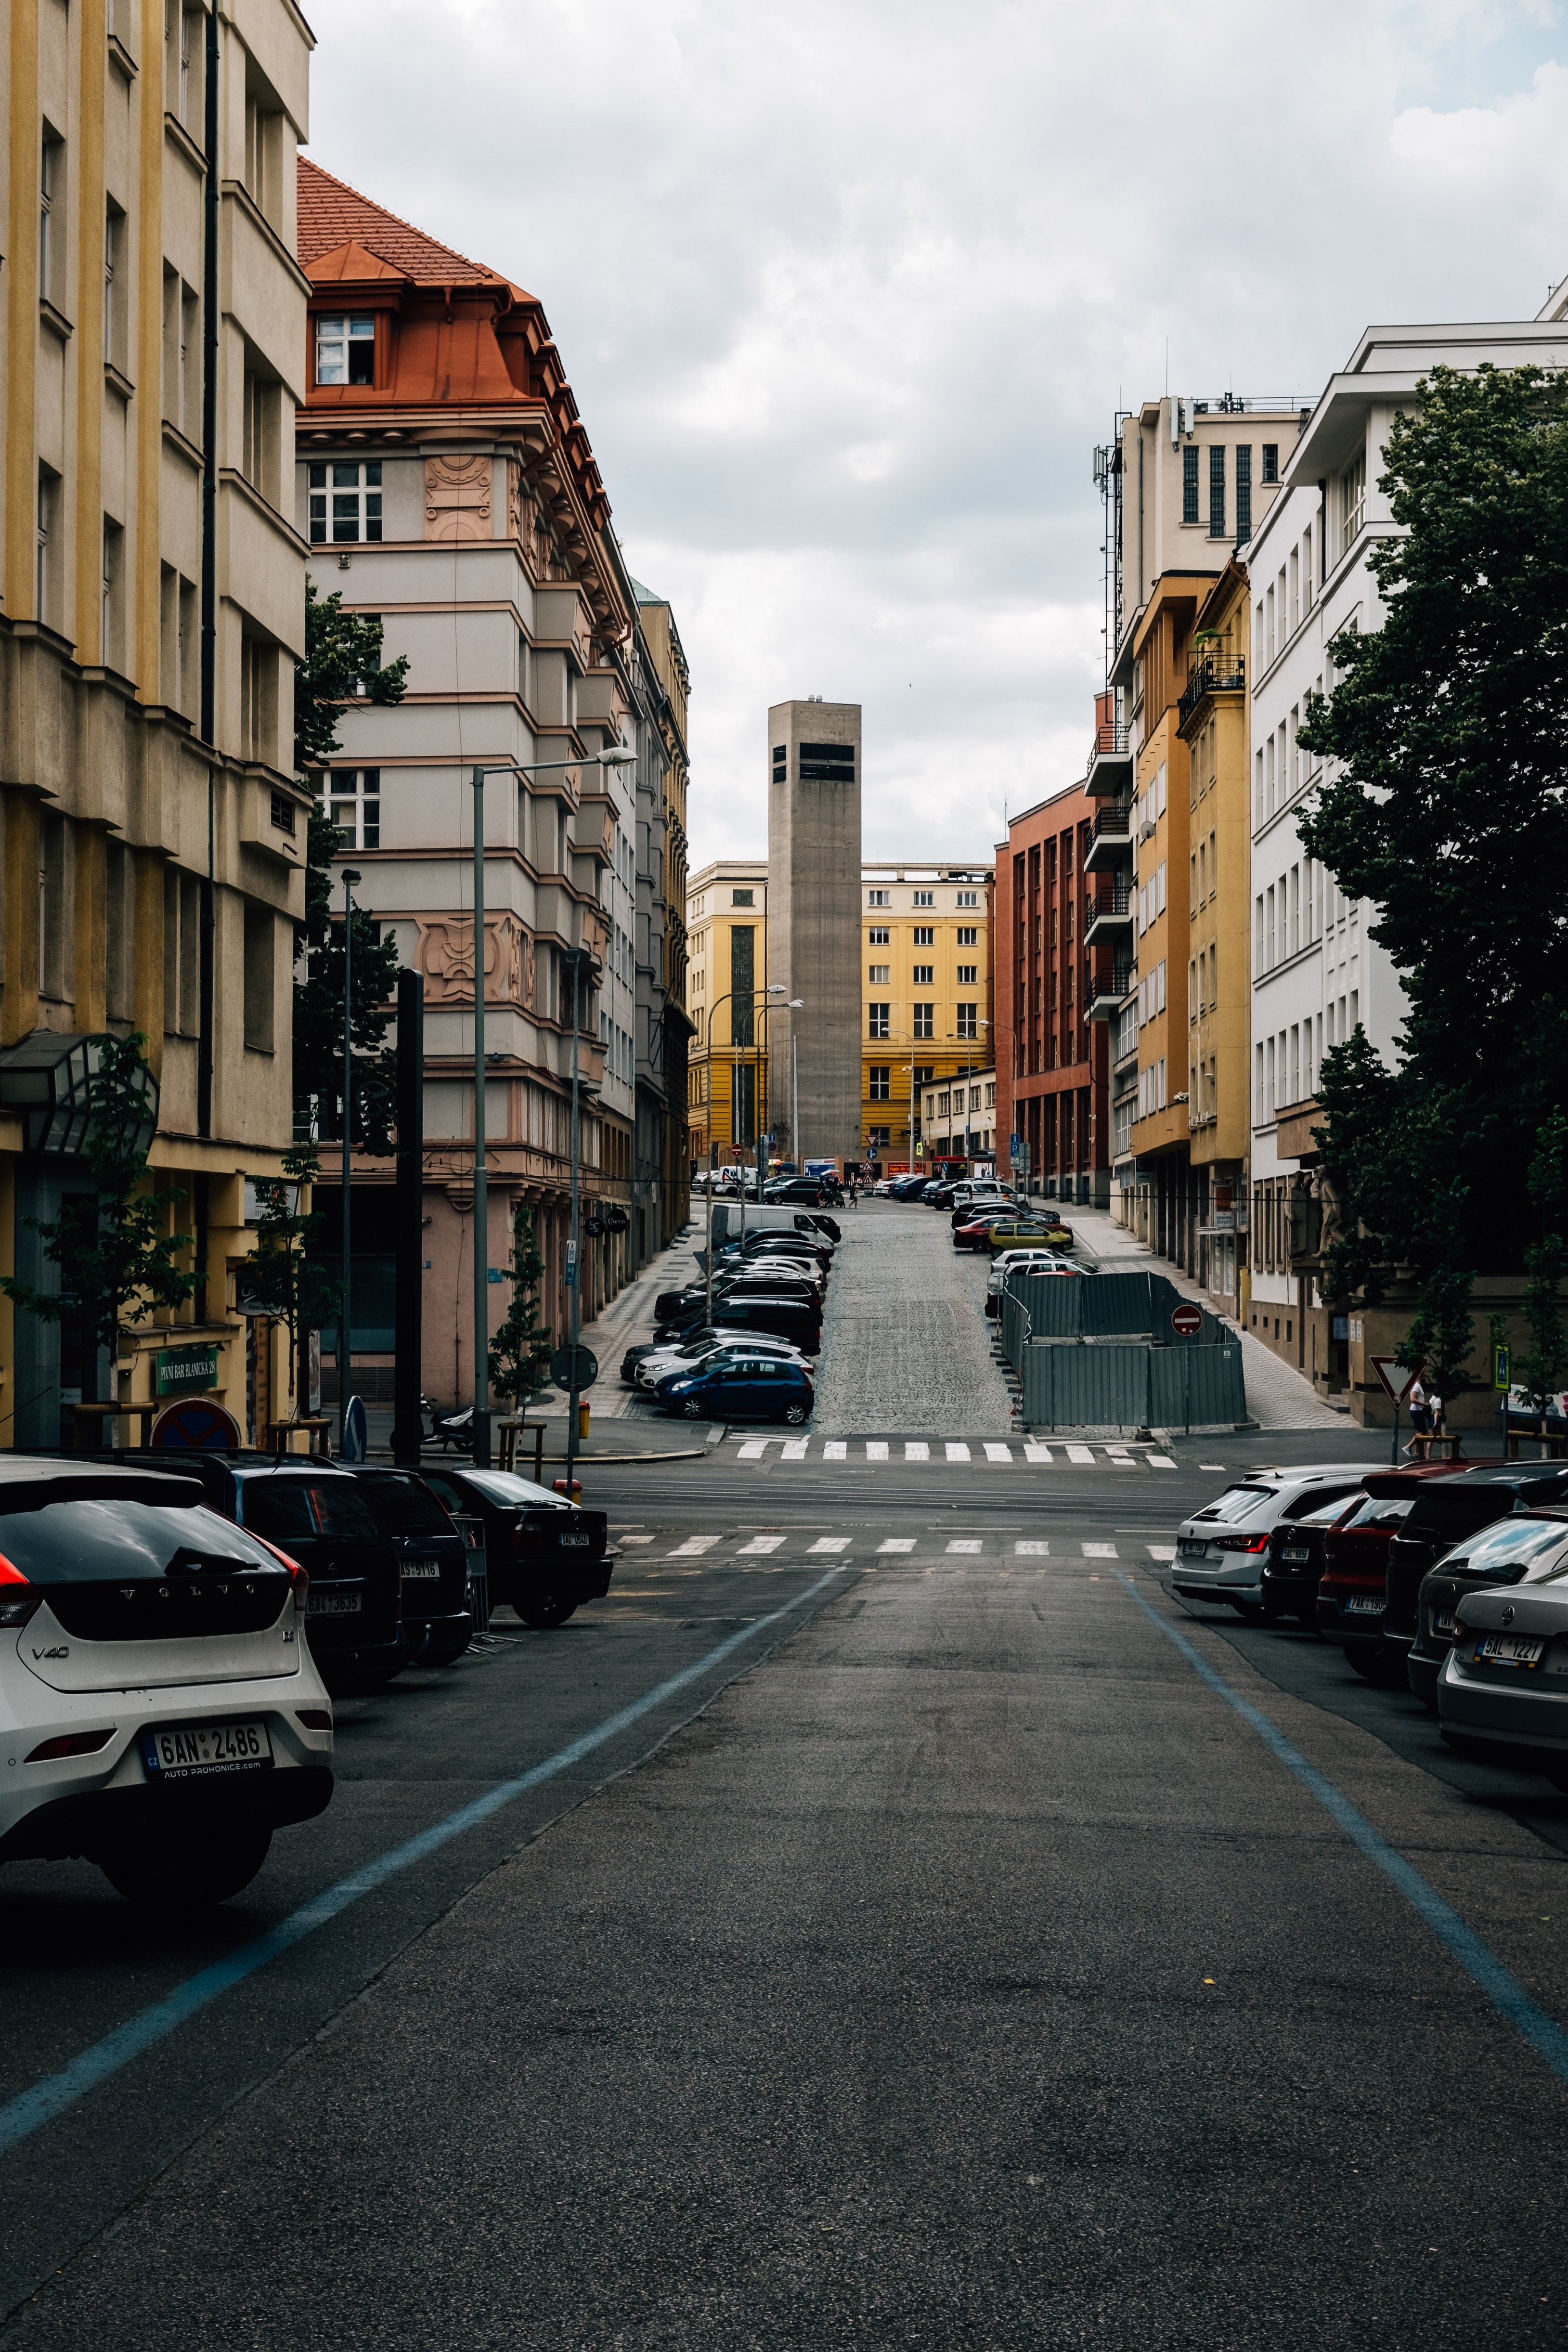 Rua tranquila com edifícios coloridos e fotos de carros estacionados 